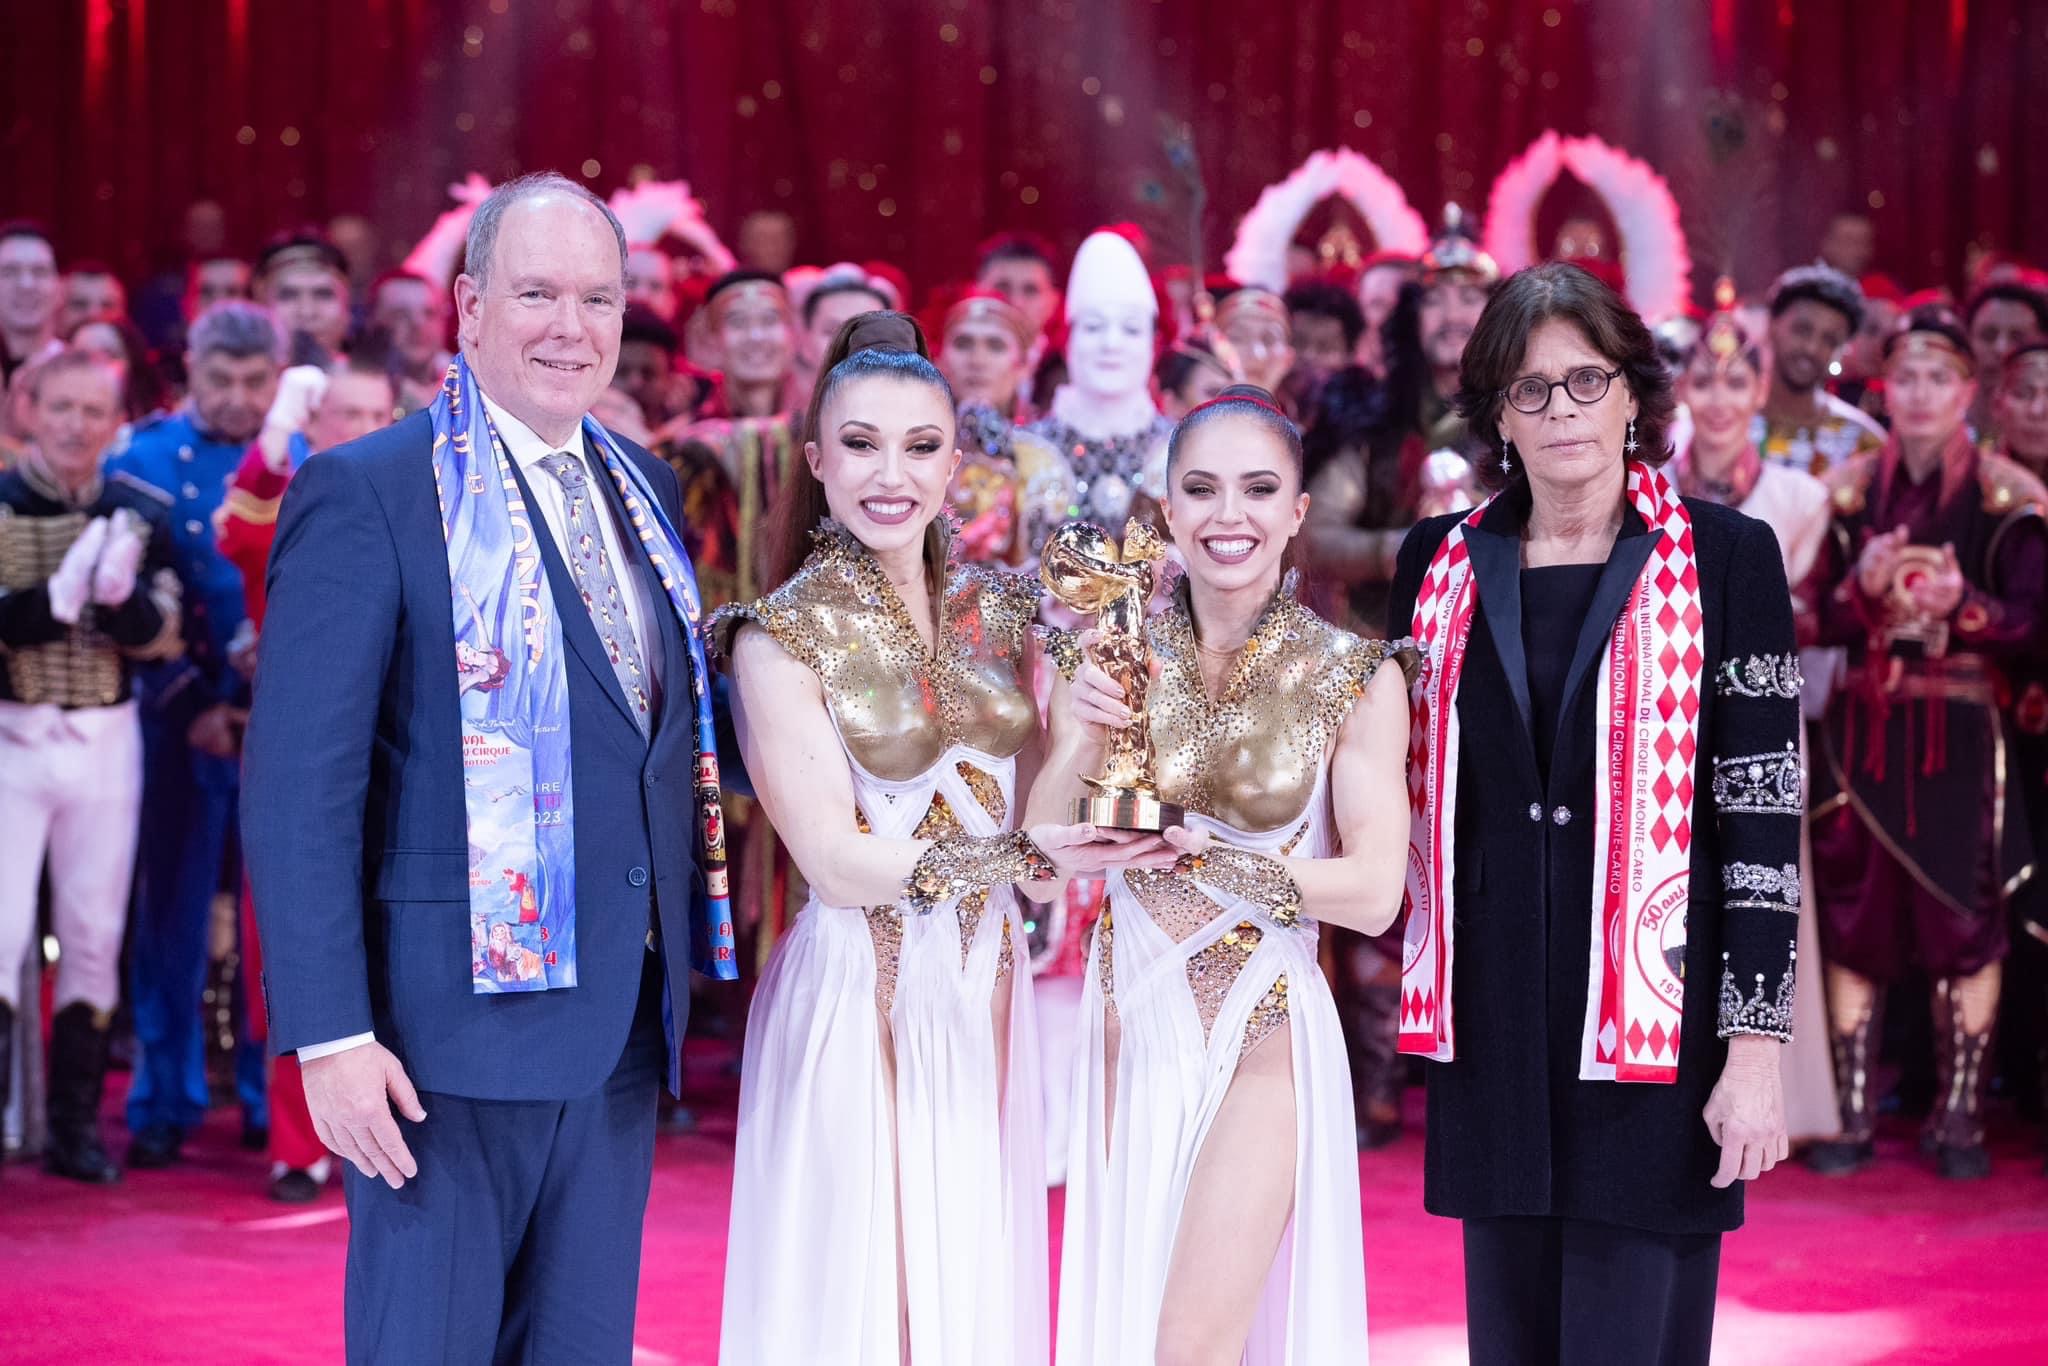 Albert herceg elvitte a show-t a Monte-carlói Nemzetközi Cirkuszfesztiválon